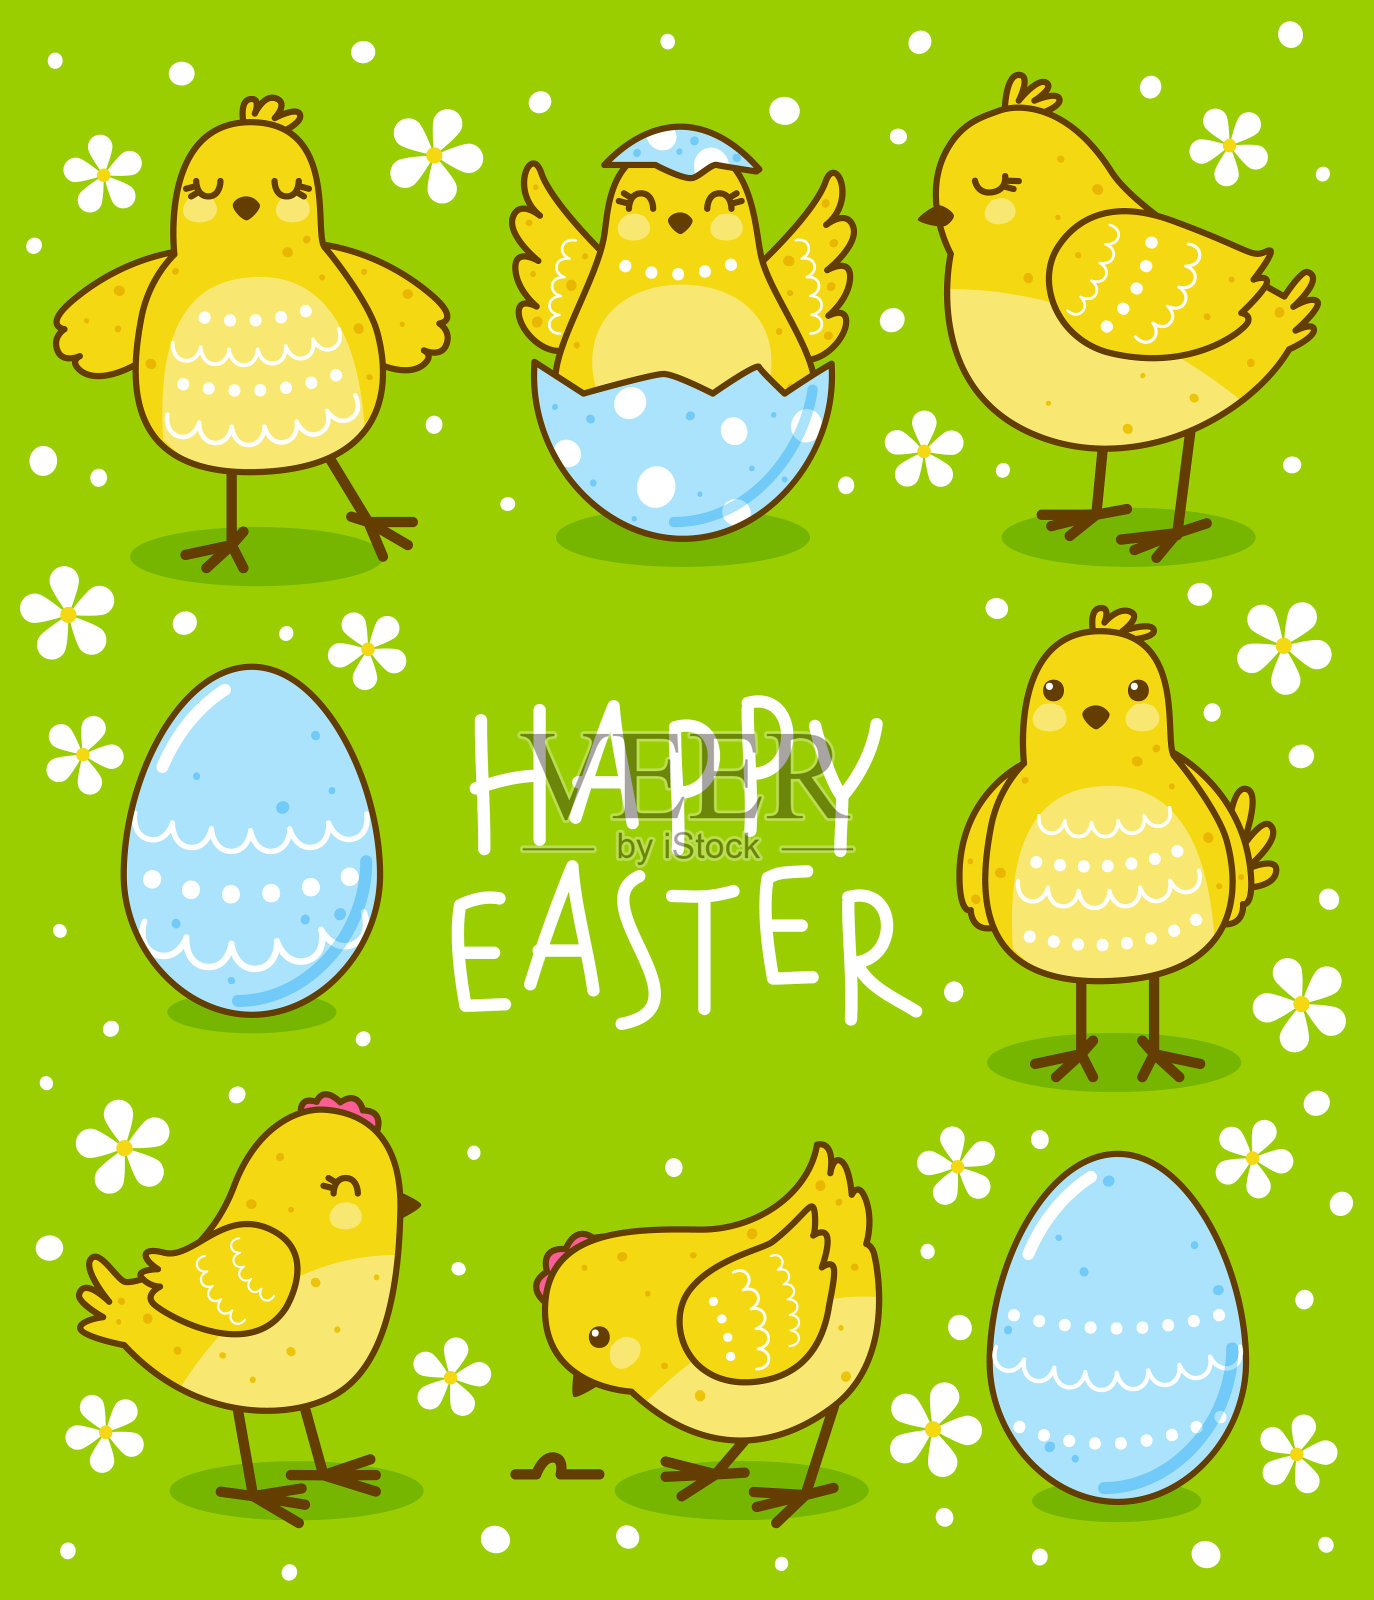 复活节贺卡和可爱的黄色小鸡在绿色插画图片素材